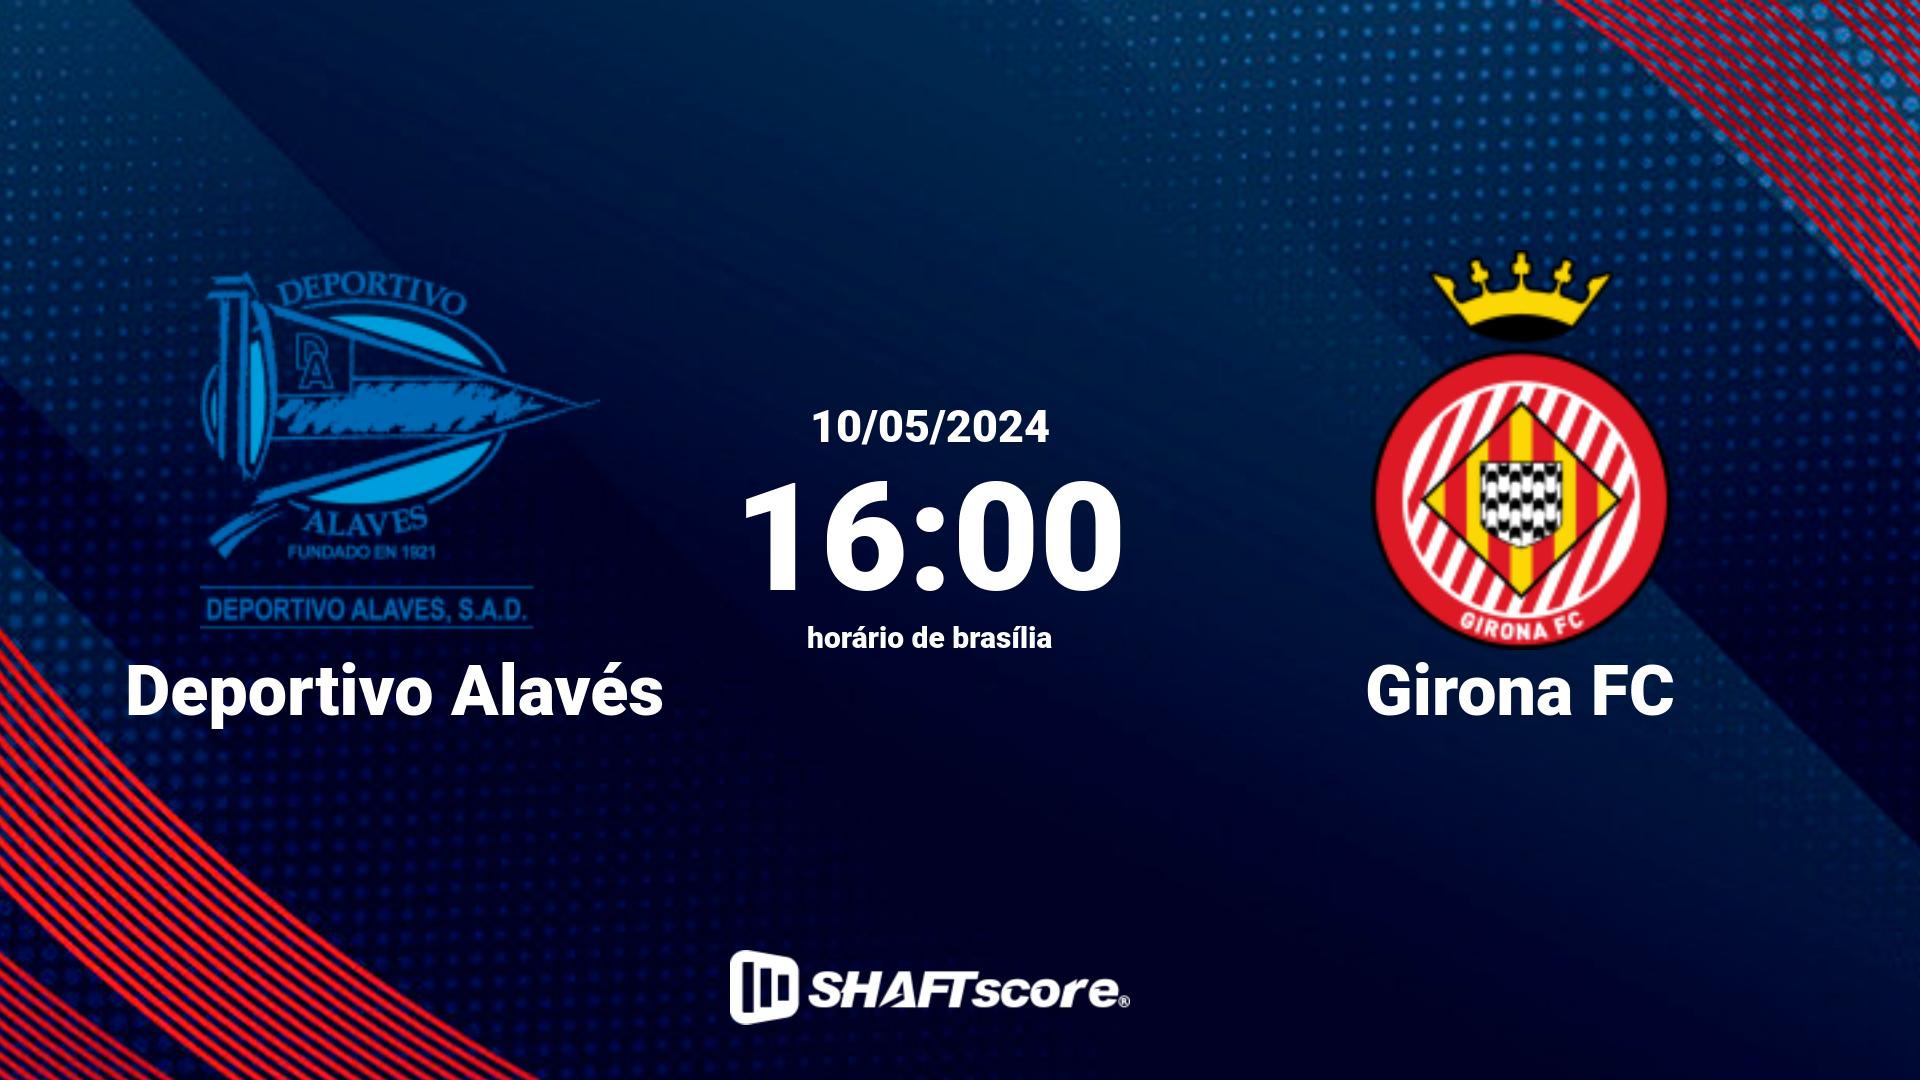 Estatísticas do jogo Deportivo Alavés vs Girona FC 10.05 16:00